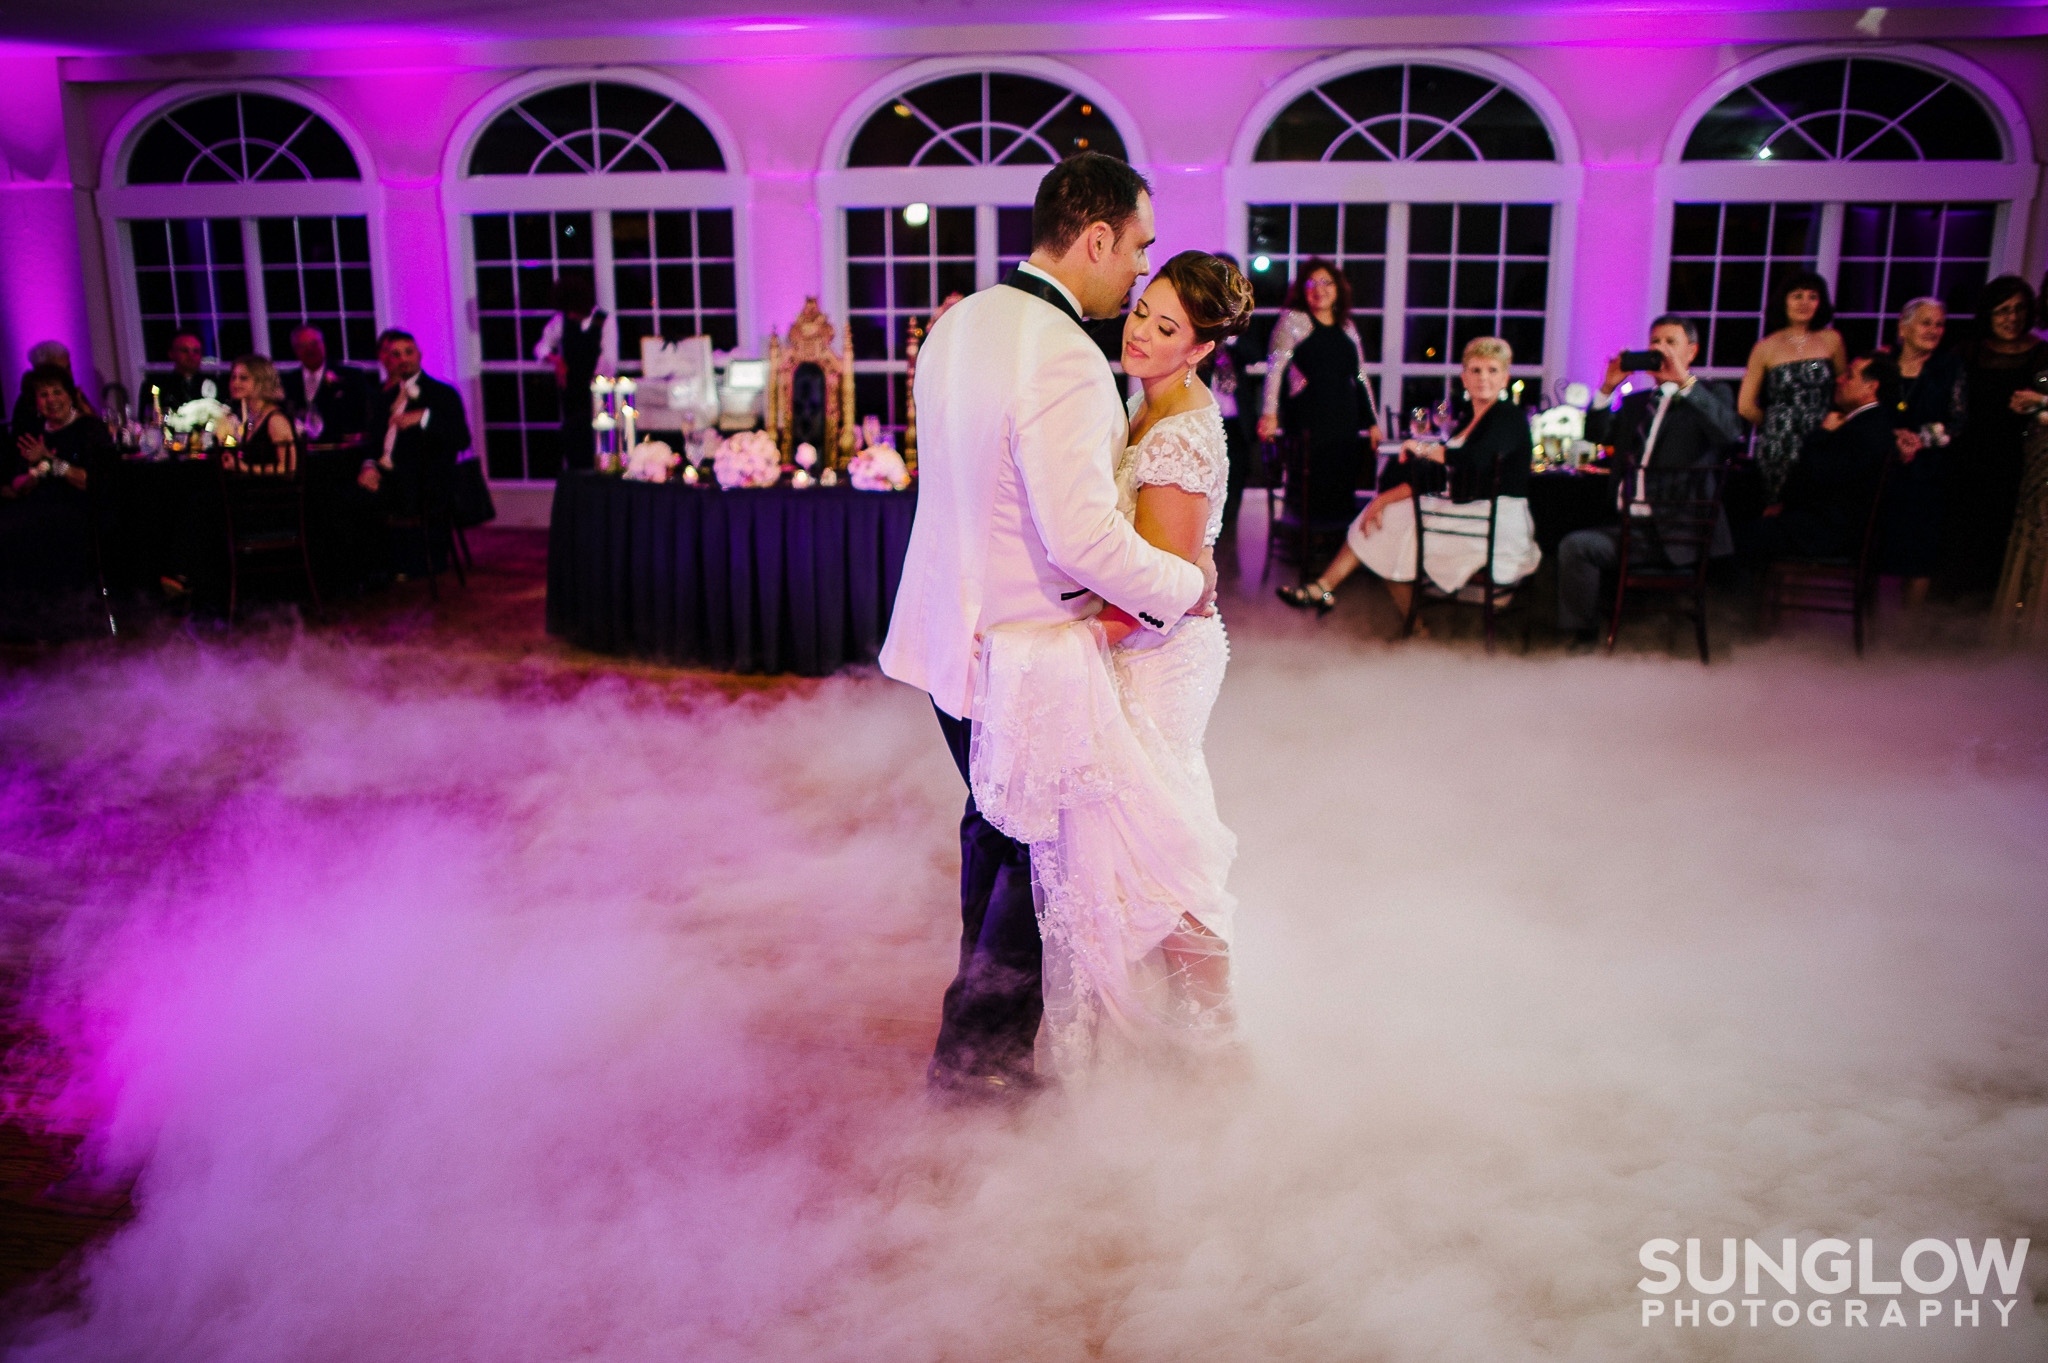 ‪#Dancingonacloud #Weddinguplighting #WeddingDJ #Tampauplighting #TampaDJ #MichaelAnthonyProductions #Weddingspecialeffects #Sunglowphotography #Glenlakescountryclub‬